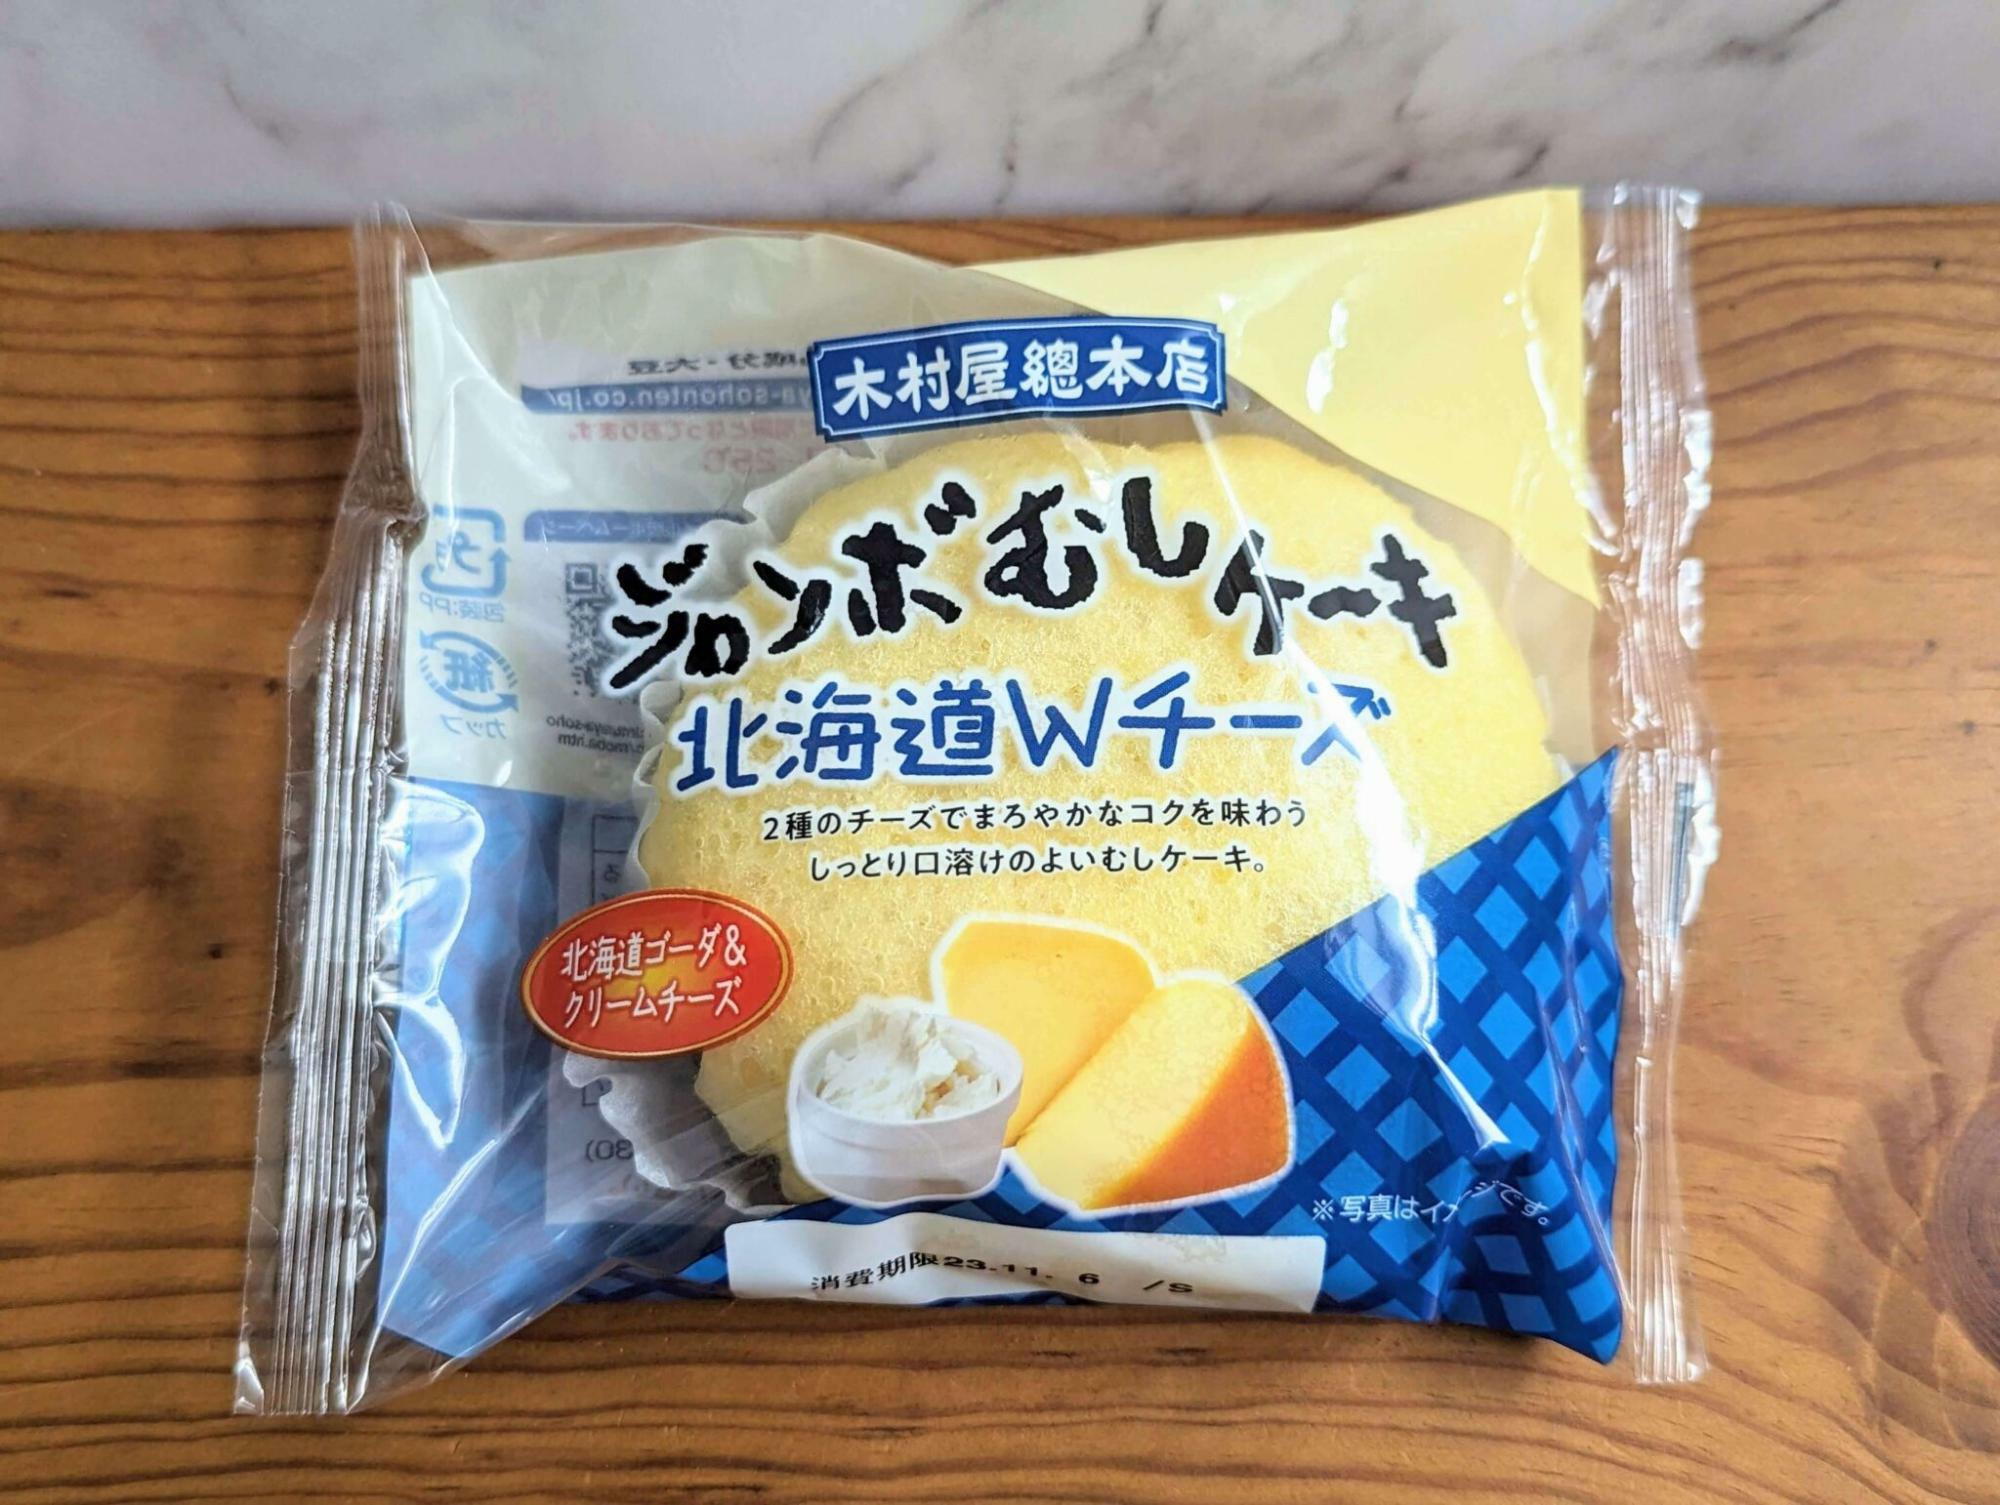 木村屋のジャンボむしケーキ 北海道Wチーズ